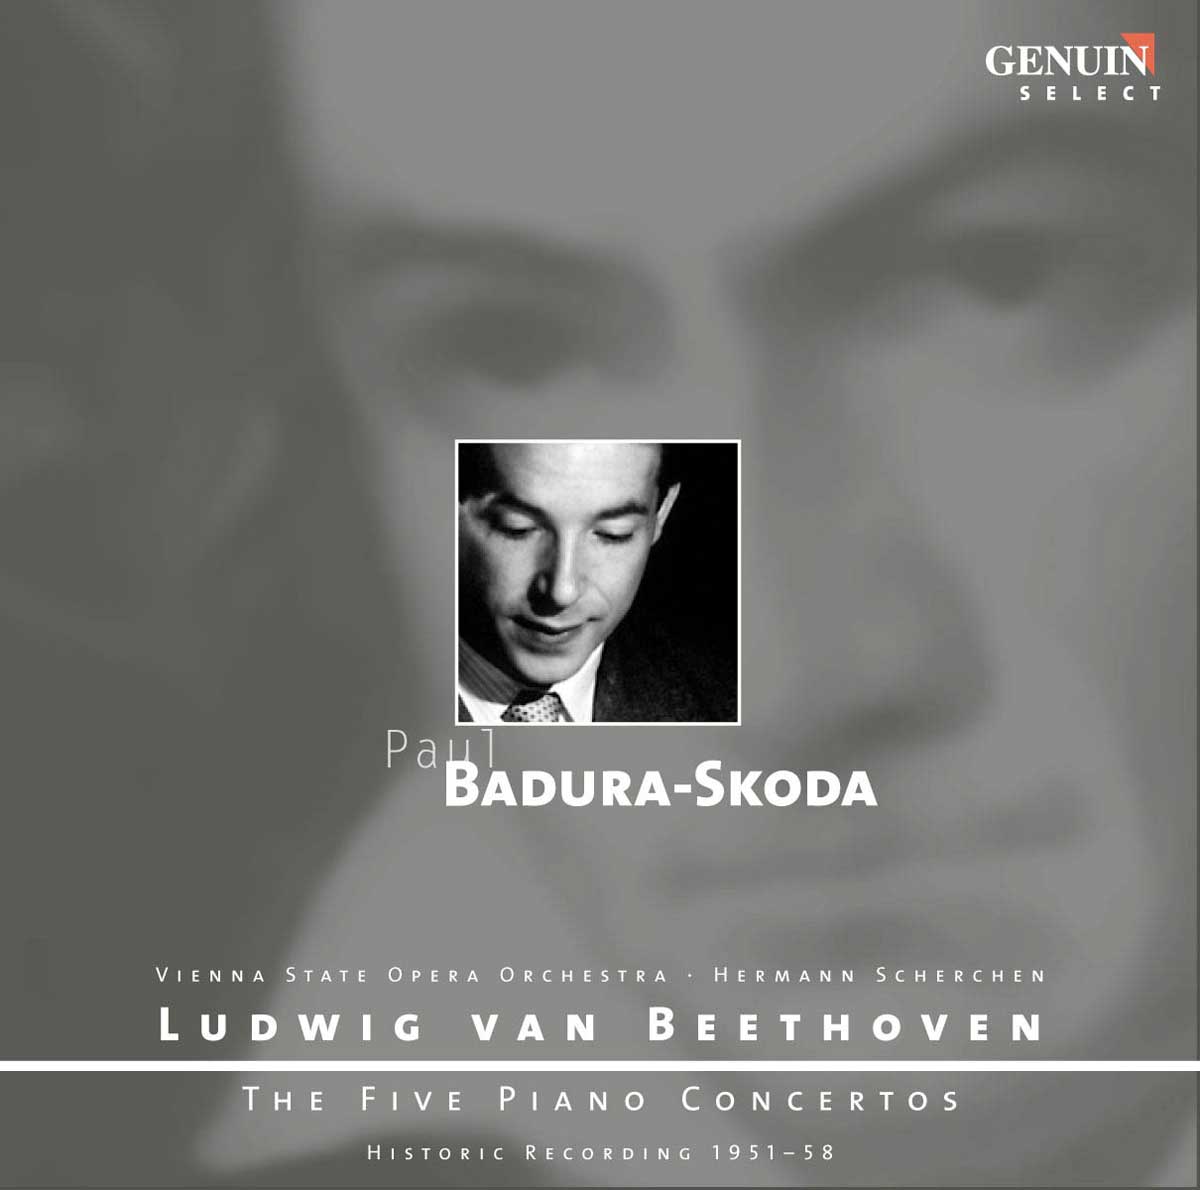 CD album cover 'Ludwig van Beethoven: Die f�nf Klavierkonzerte' (GEN 87102) with Paul Badura-Skoda ...